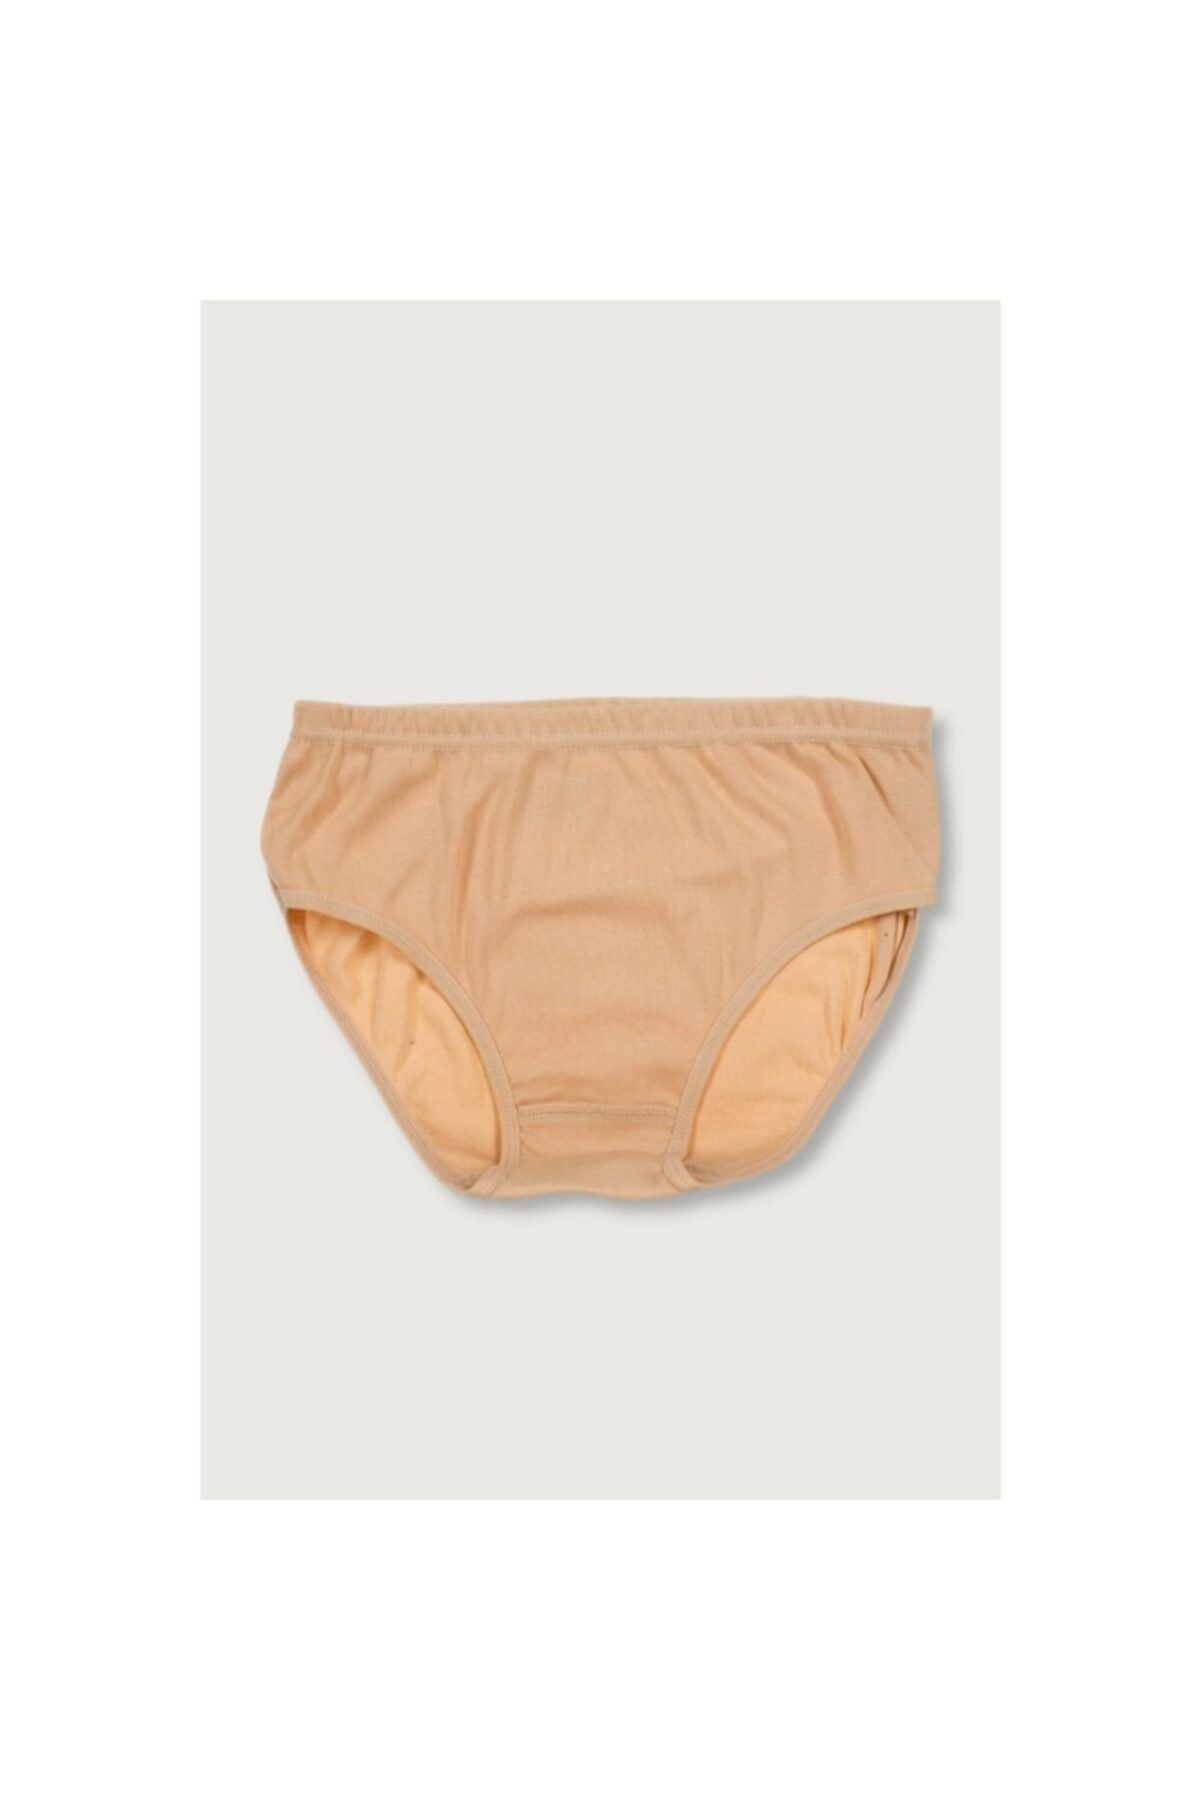 Berrak Women's 12 Pack Cotton Rib High Waist Bato Panties - Trendyol